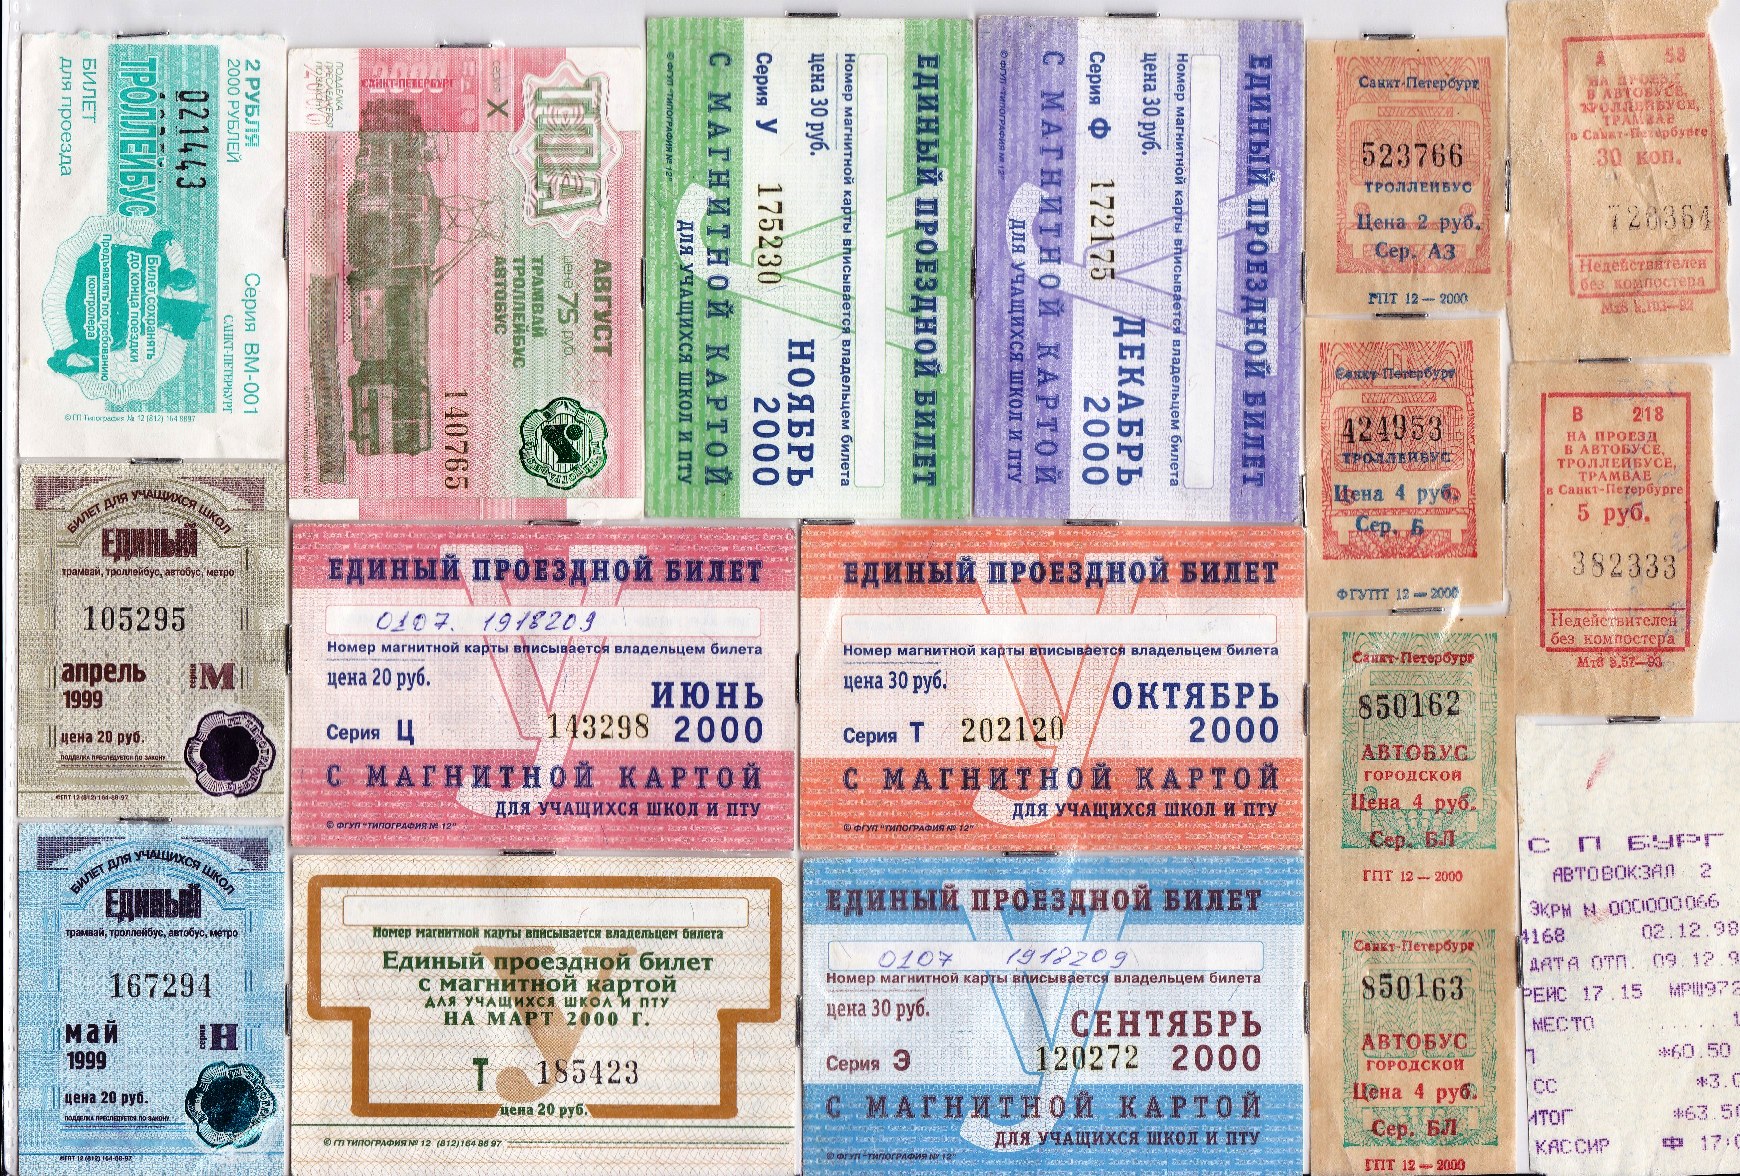 Проездной билет на автобус 2000 год. Билет на общественный транспорт. Билет в Санкт-Петербург. Ученические проездные билеты